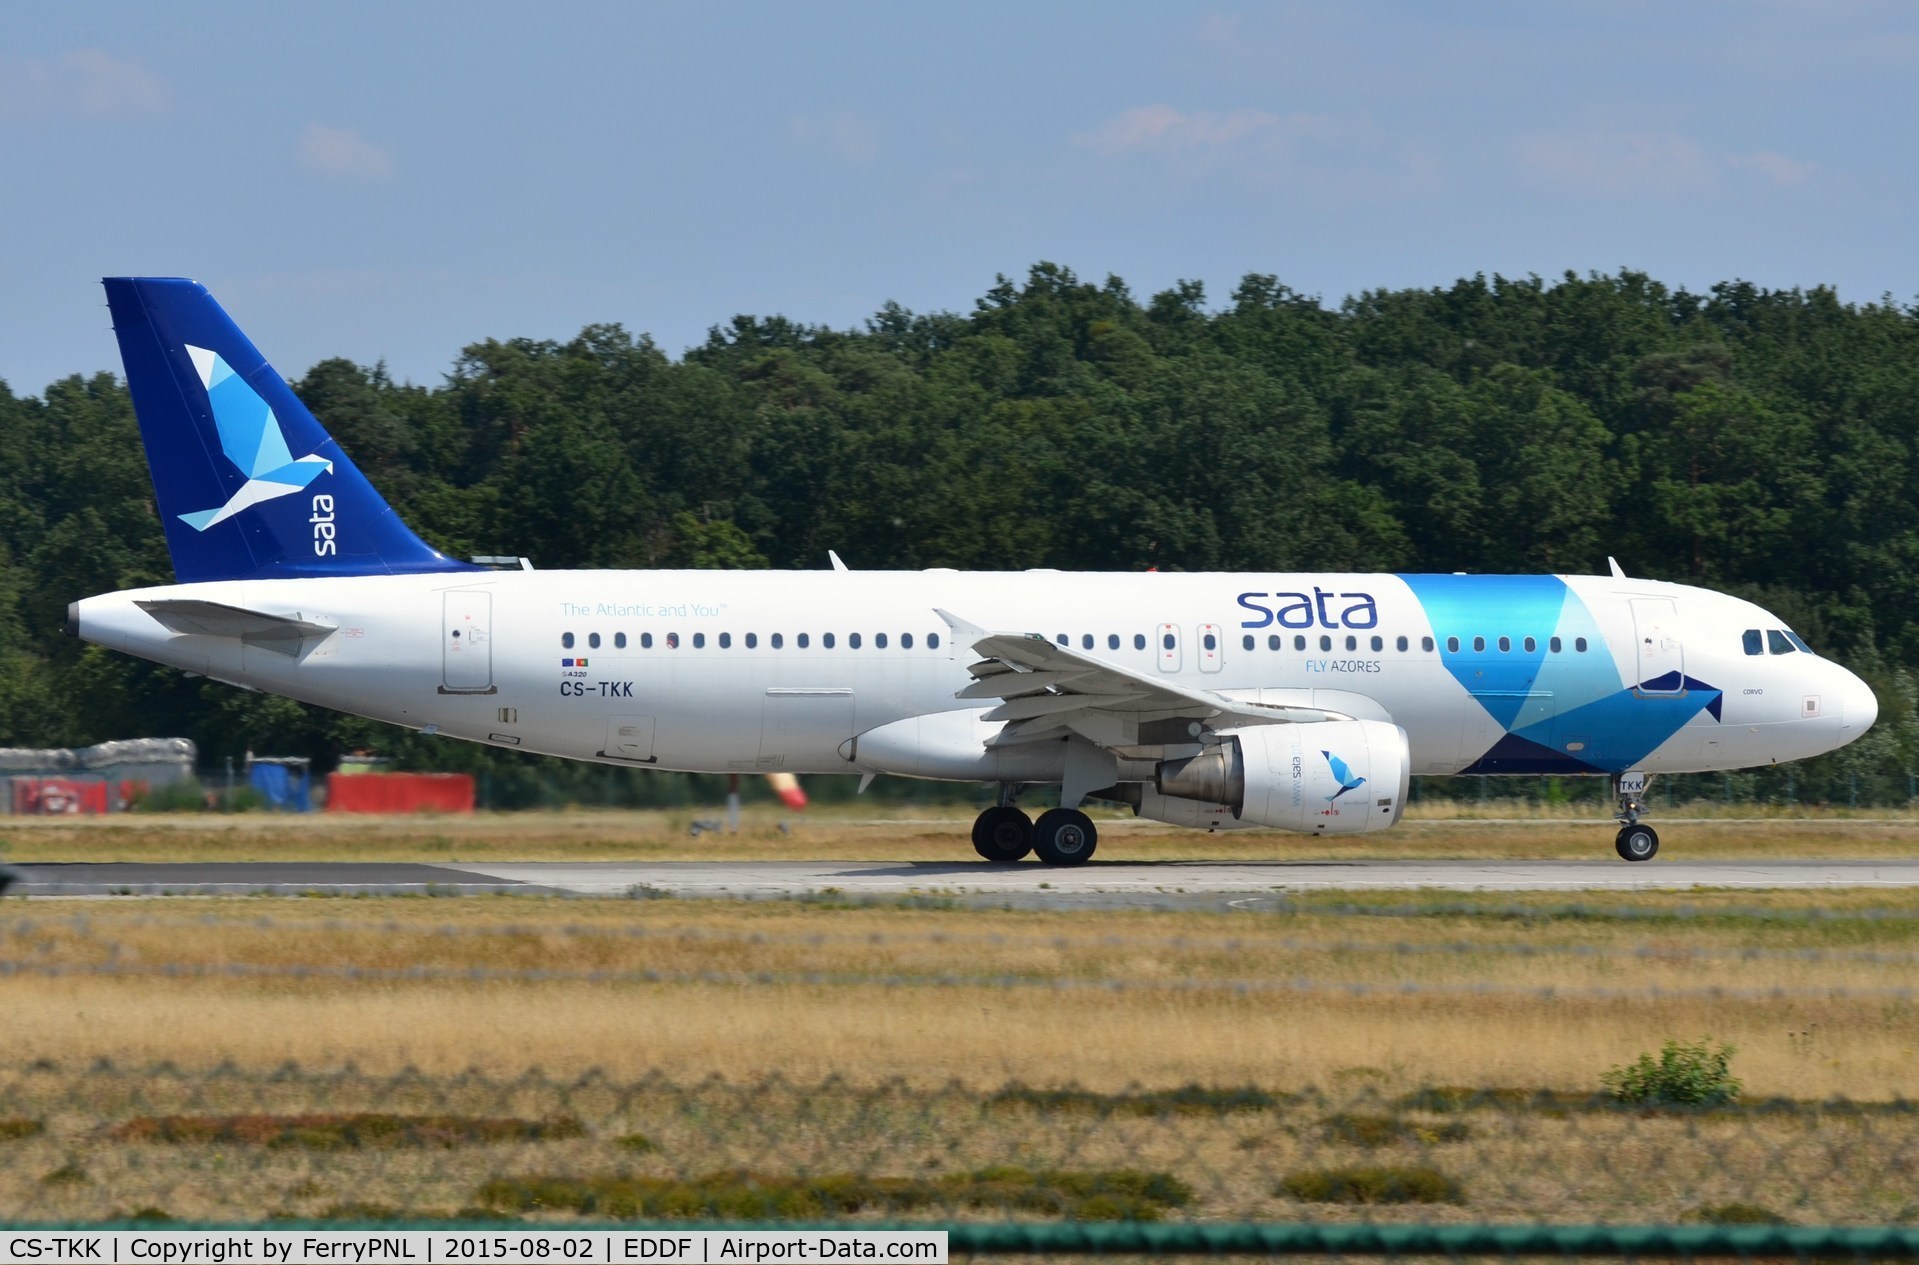 CS-TKK, 2005 Airbus A320-214 C/N 2390, SATA A320 taking-off.